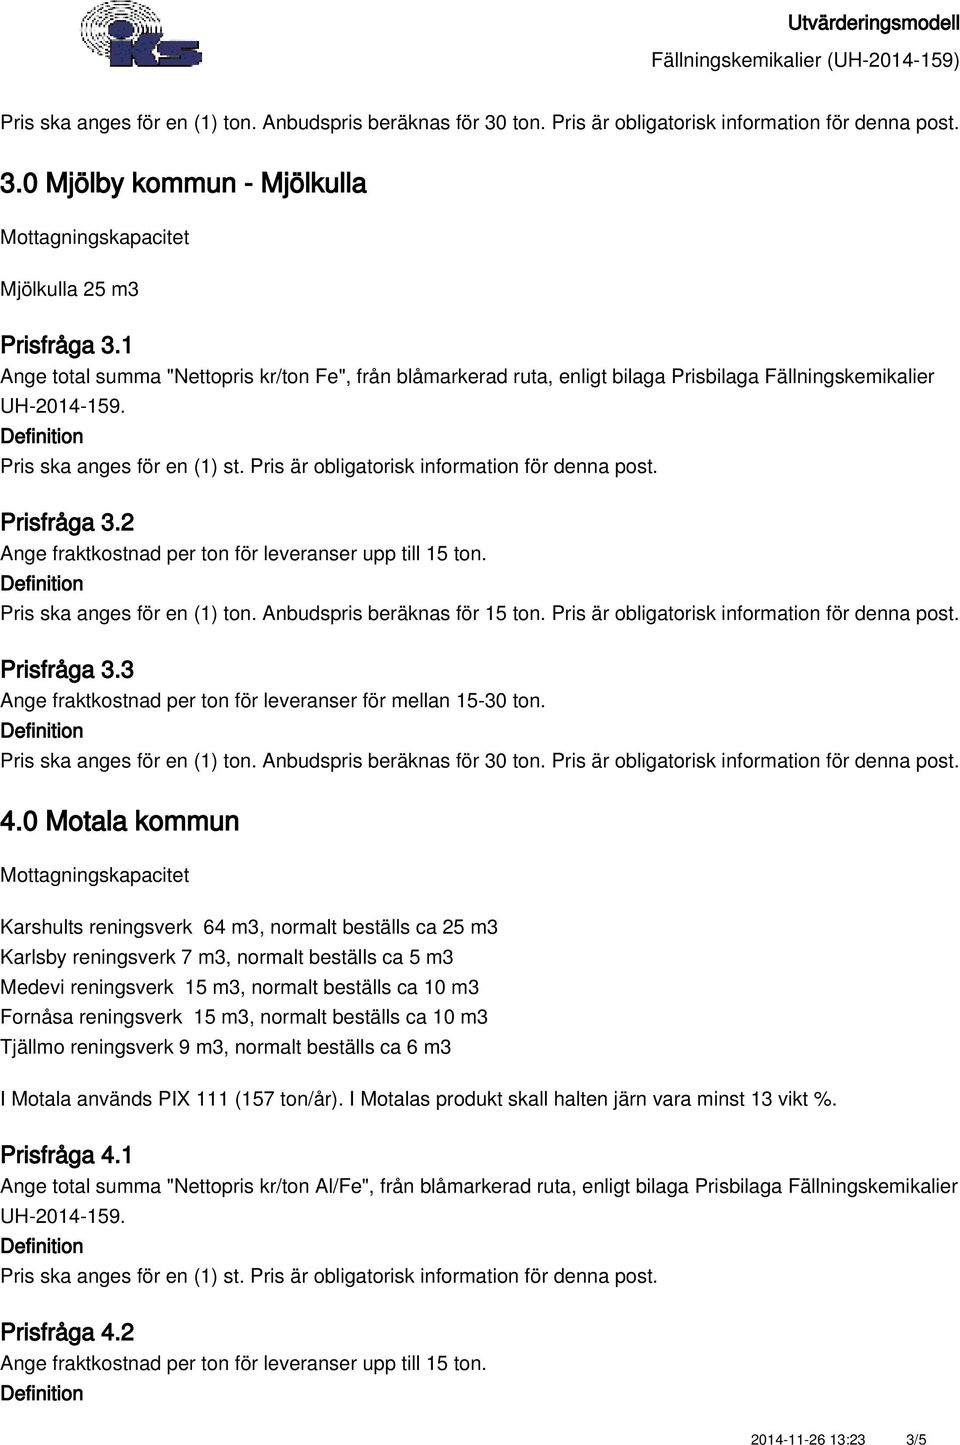 0 Motala kommun Karshults reningsverk 64 m3, normalt beställs ca 25 m3 Karlsby reningsverk 7 m3, normalt beställs ca 5 m3 Medevi reningsverk 15 m3, normalt